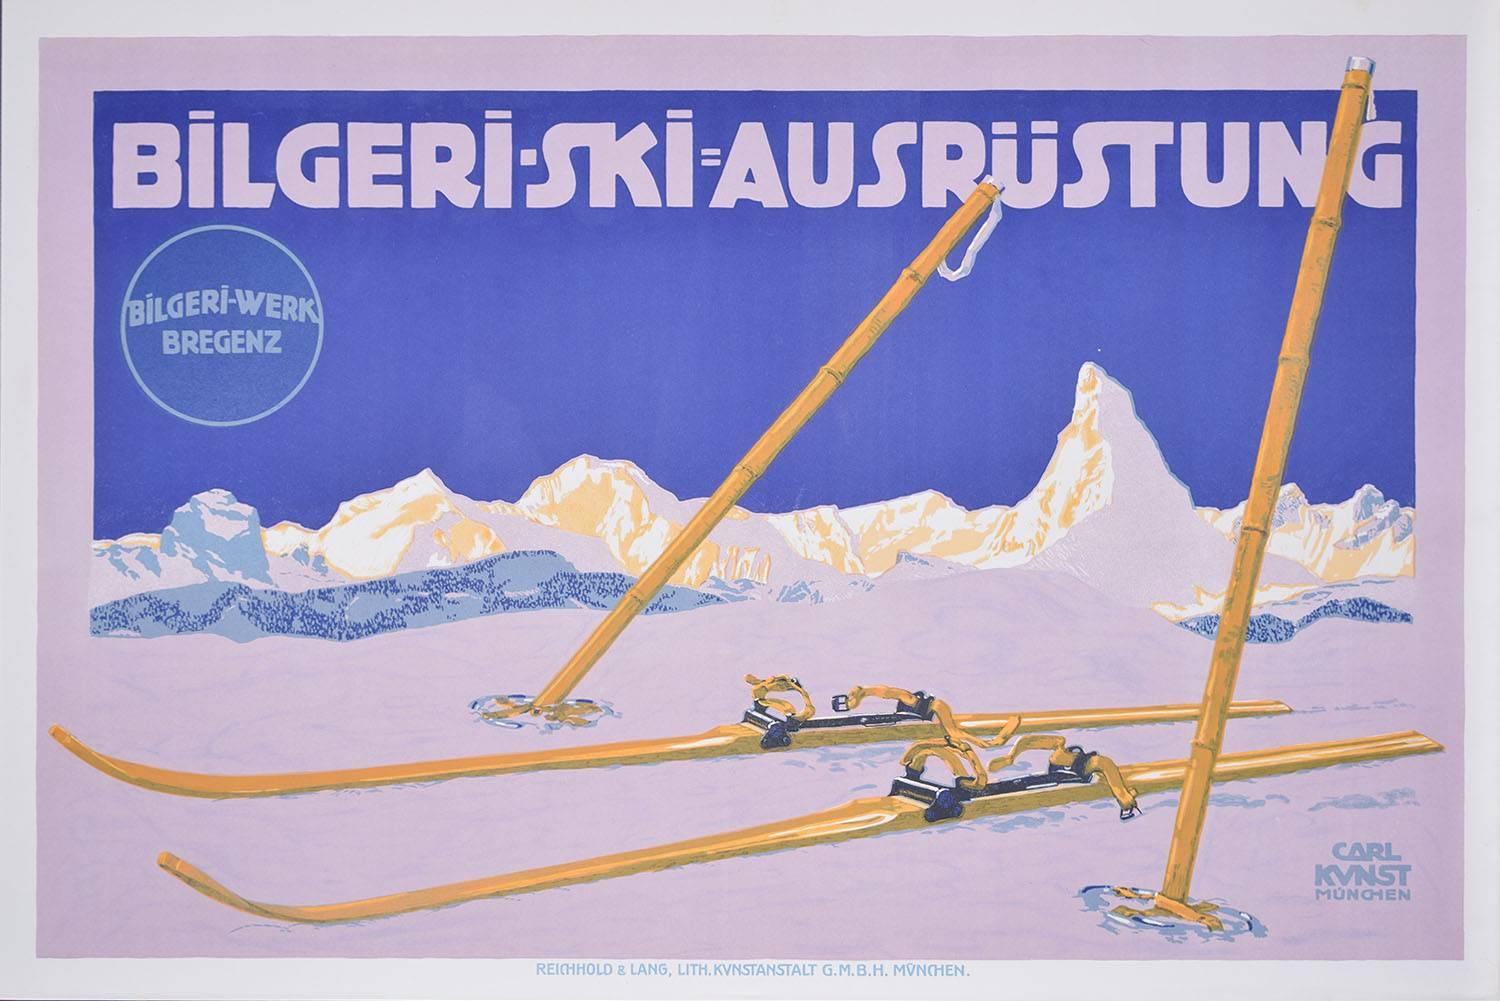 Pour voir nos autres affiches de voyage vintage originales, dont beaucoup ont pour sujet le ski, faites défiler la page vers le bas jusqu'à "Plus de ce vendeur" et en dessous cliquez sur "Voir tous de ce vendeur" - ou envoyez-nous un message si vous